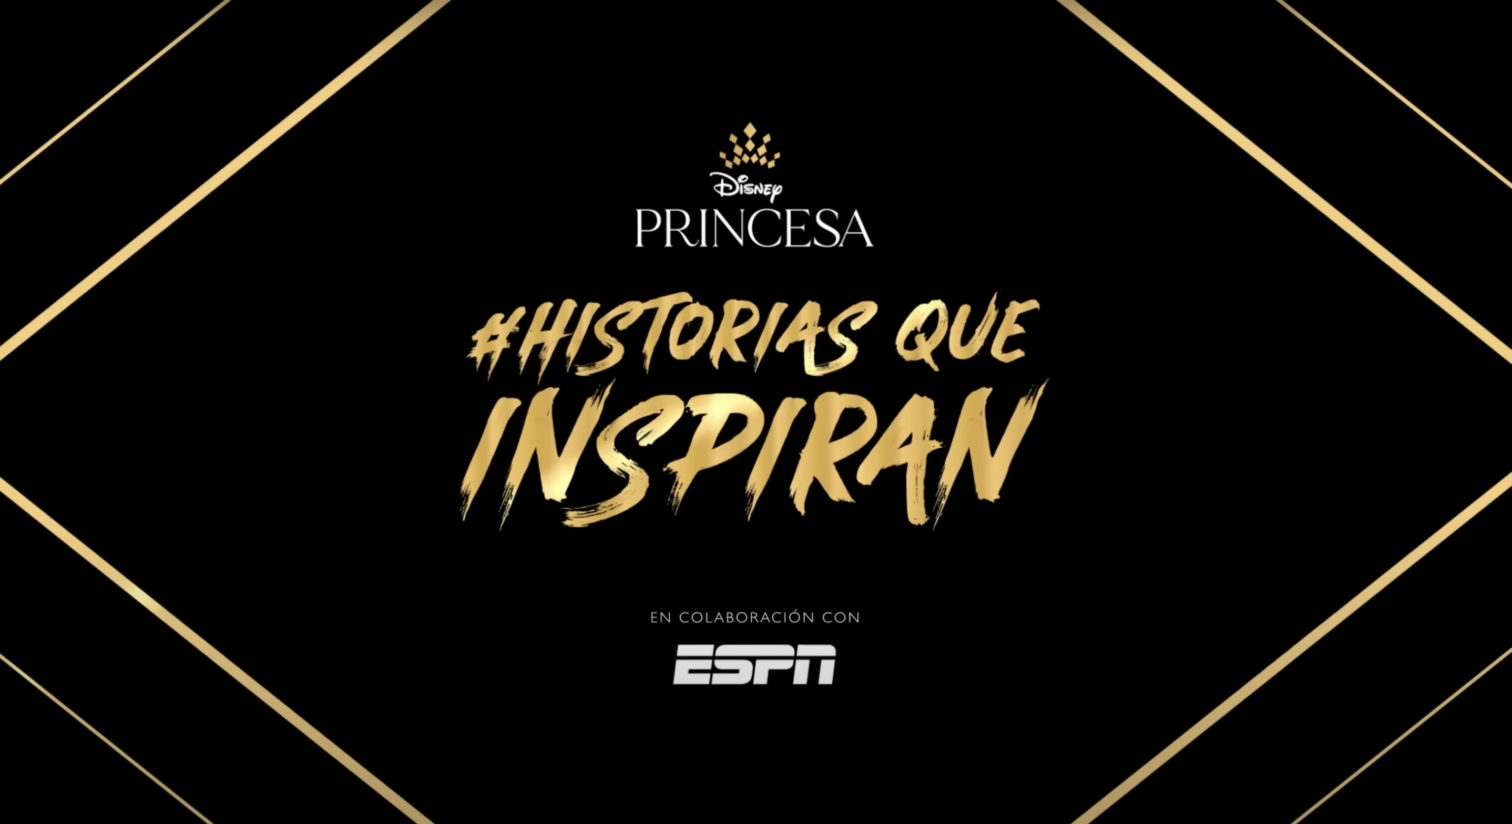 Disney Princesa presenta"Historias que inspiran" de cuatro jóvenes atletas latinoamericanas